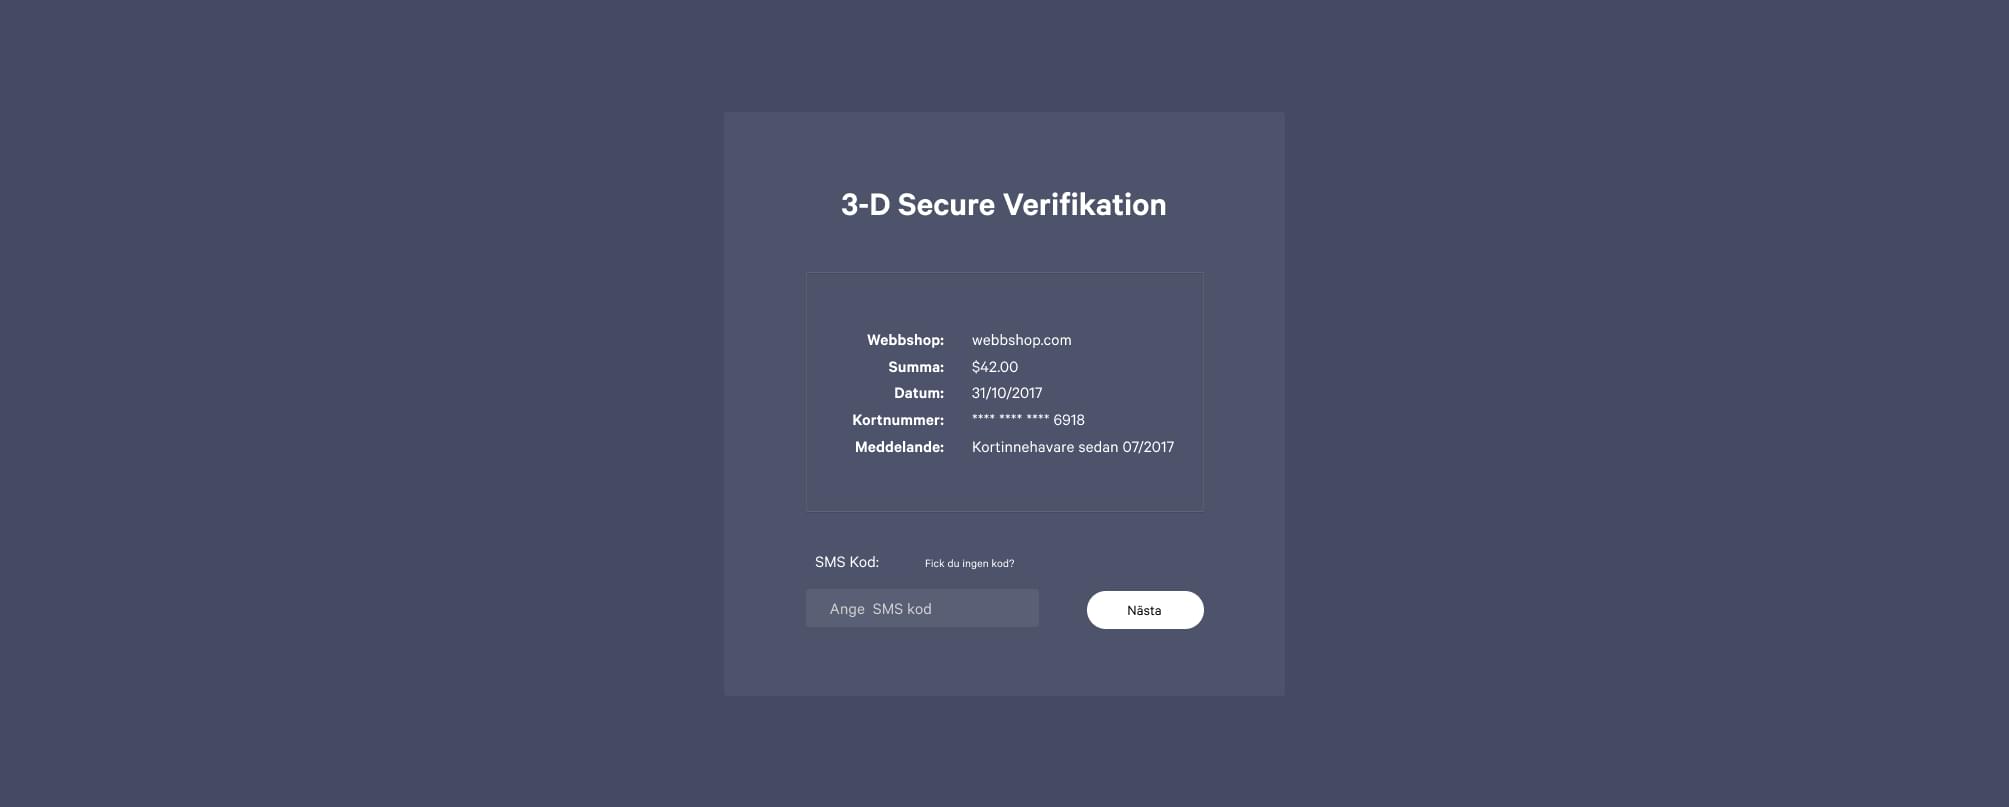 3-D Secure verifikation innehåller följande information; namnet på webbshoppen, köpsumman, datumet när köpet utförs, kortnumret, meddelande och SMS-kod.